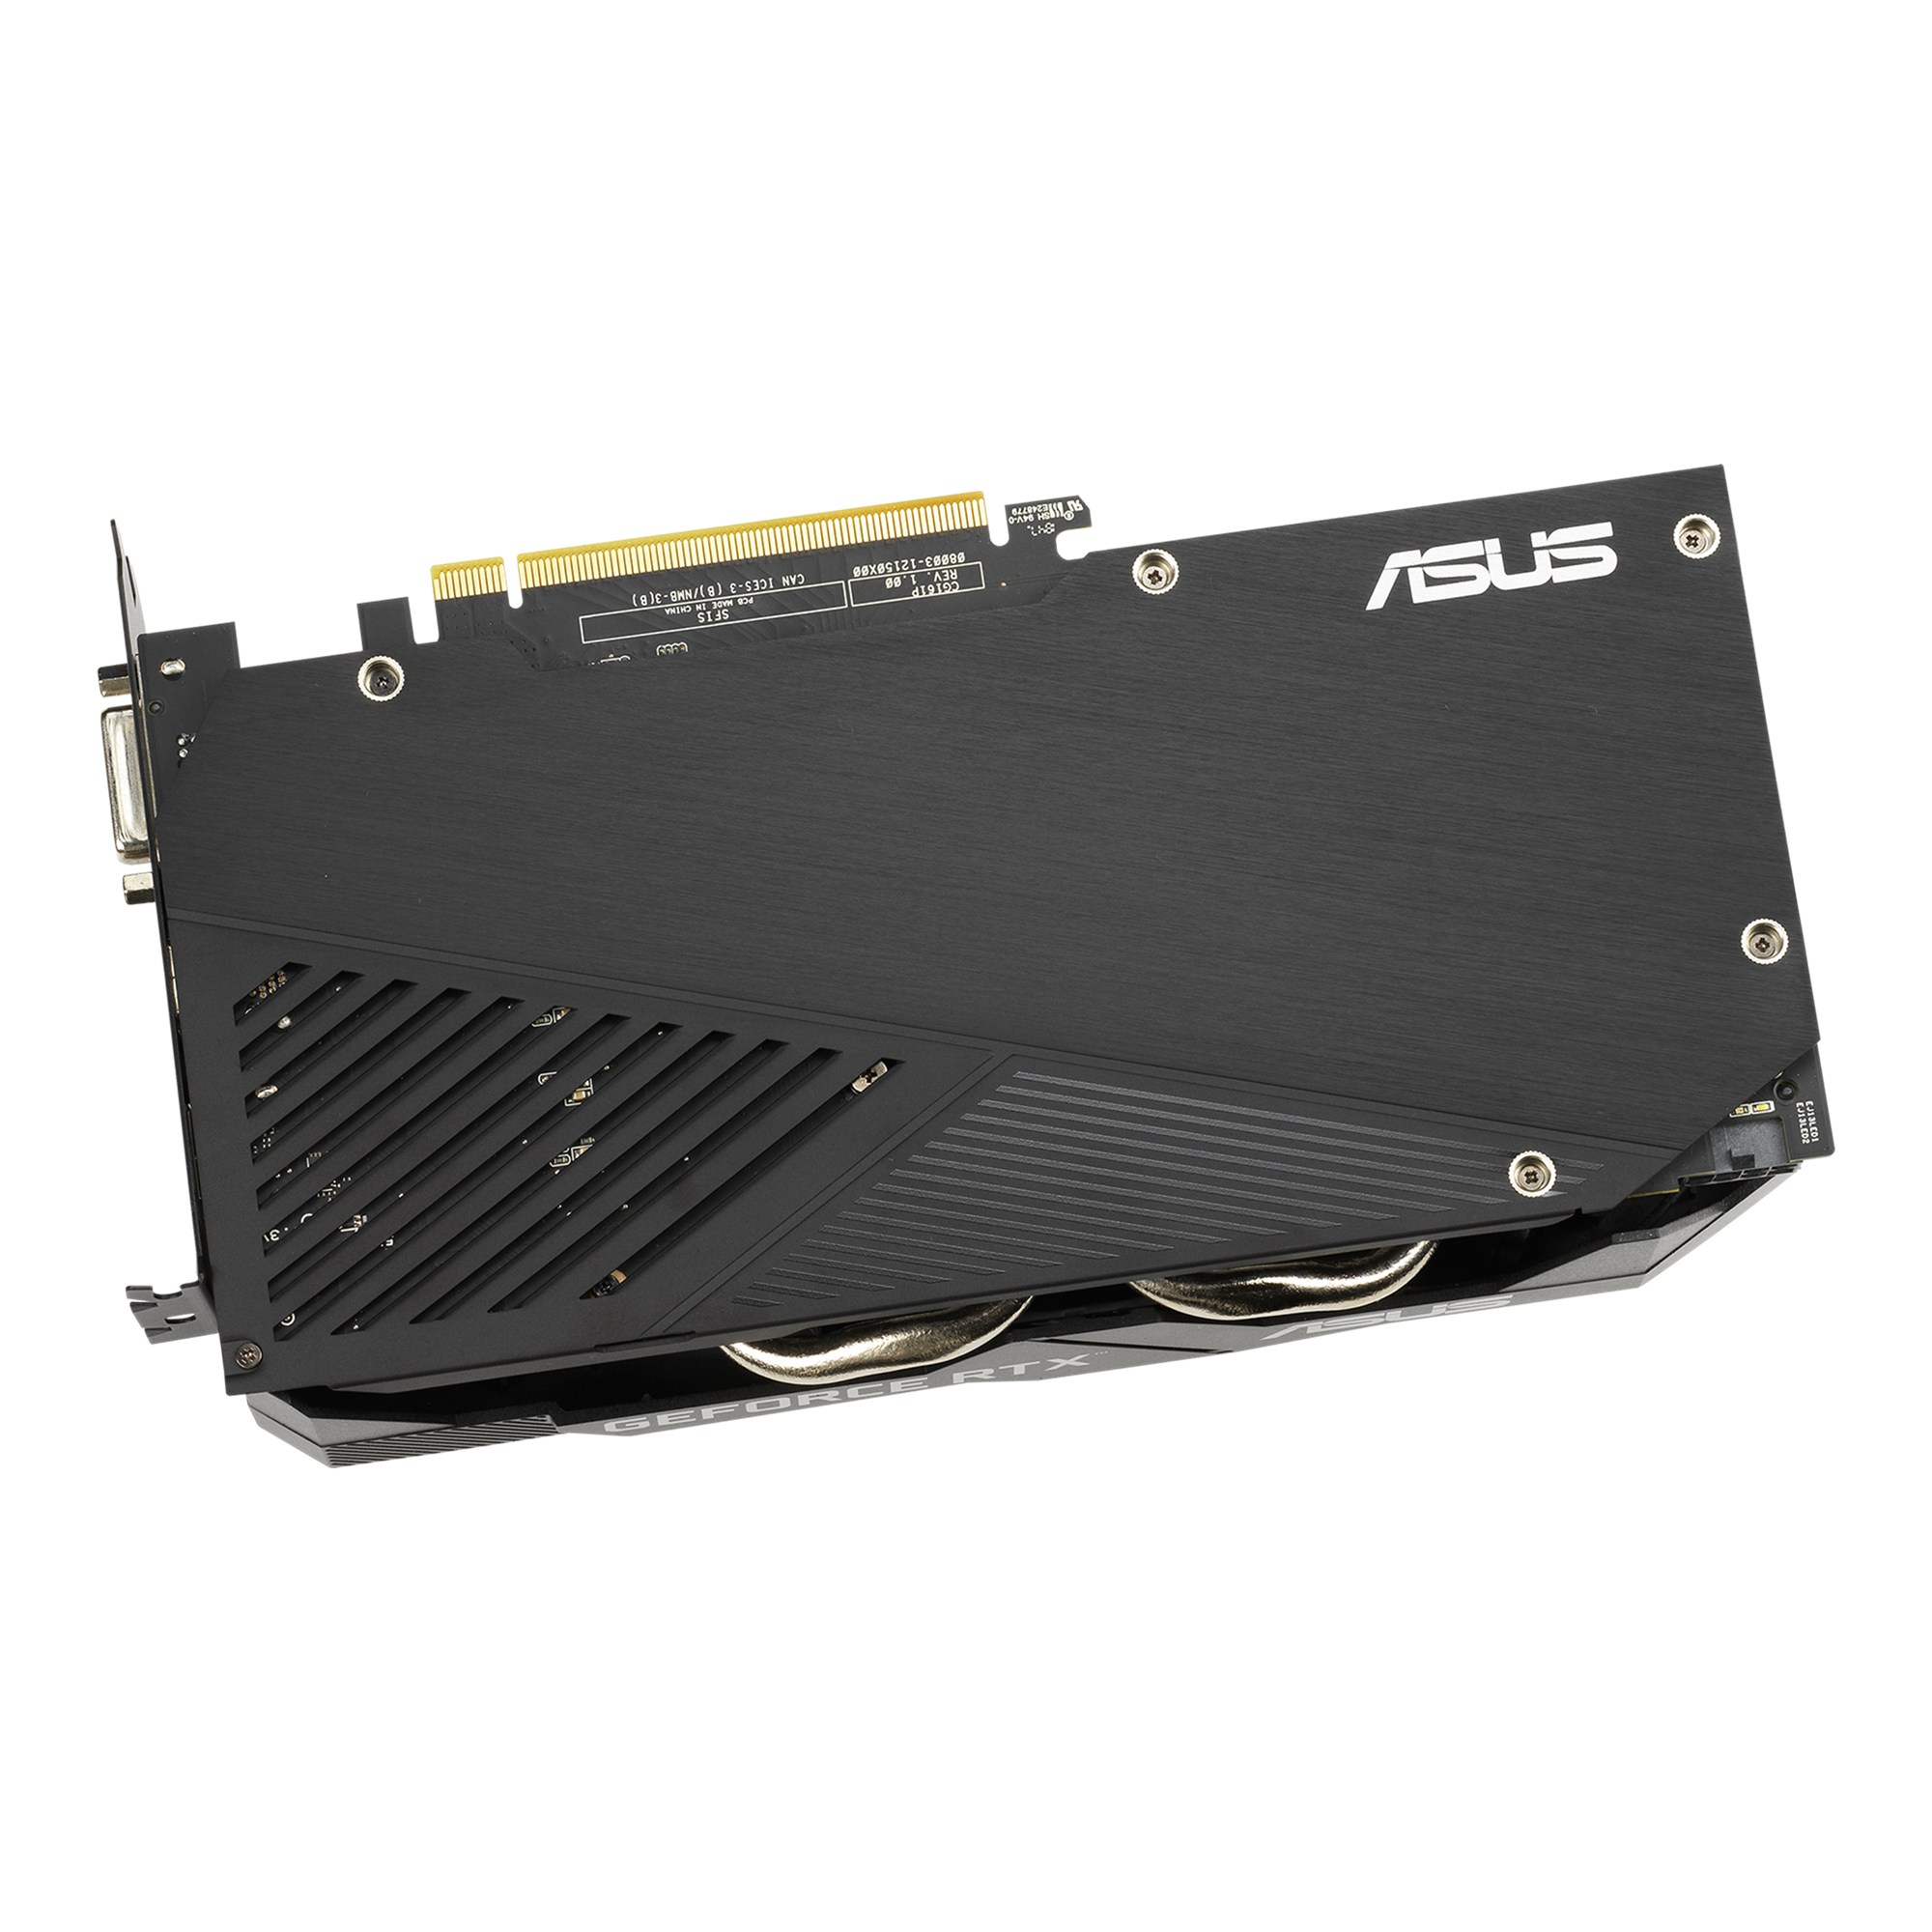 クーポン利用 ASUS Dual GeForce RTX 2060 EVO グラフィックスカード (PCIe 3.0 12GB GDDR6メモリ  HDMI DisplayPort/DVI-D/Axial-tech Fan 0dB テクノロジー オートエクストリ 